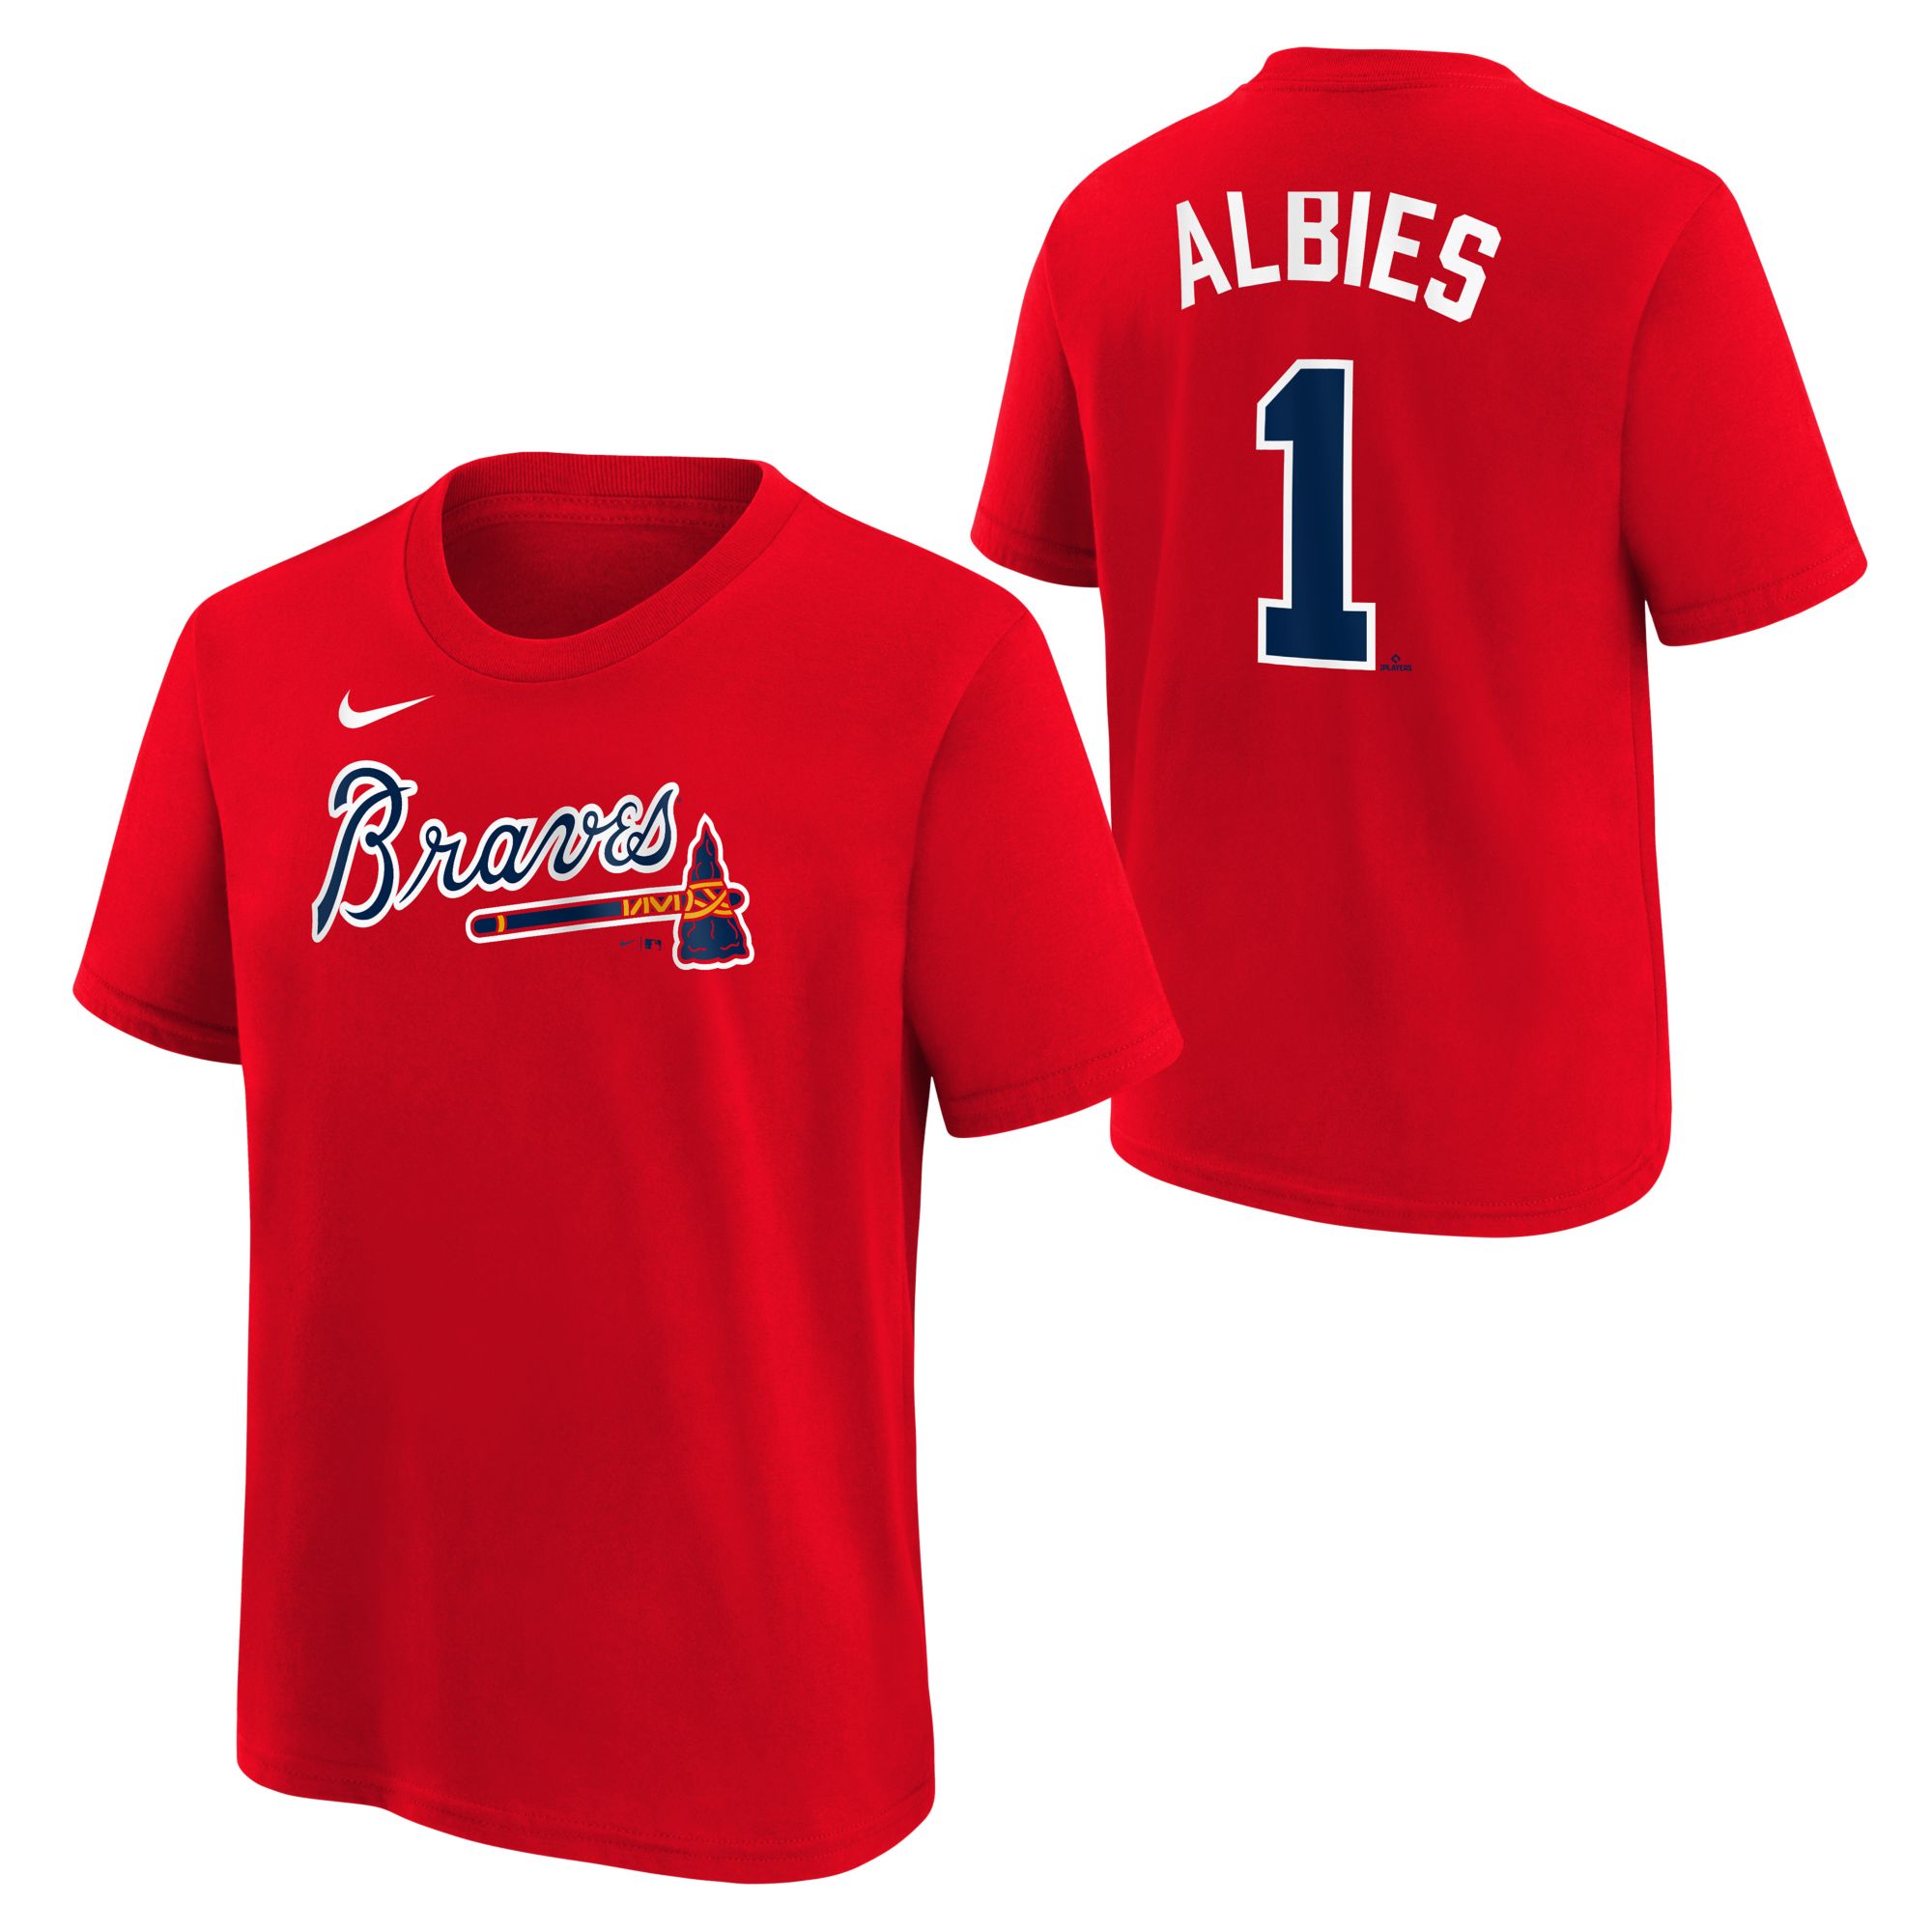 Here To Stay Austin Riley Atlanta Braves Shirt t-shirt by emeritatshirt -  Issuu